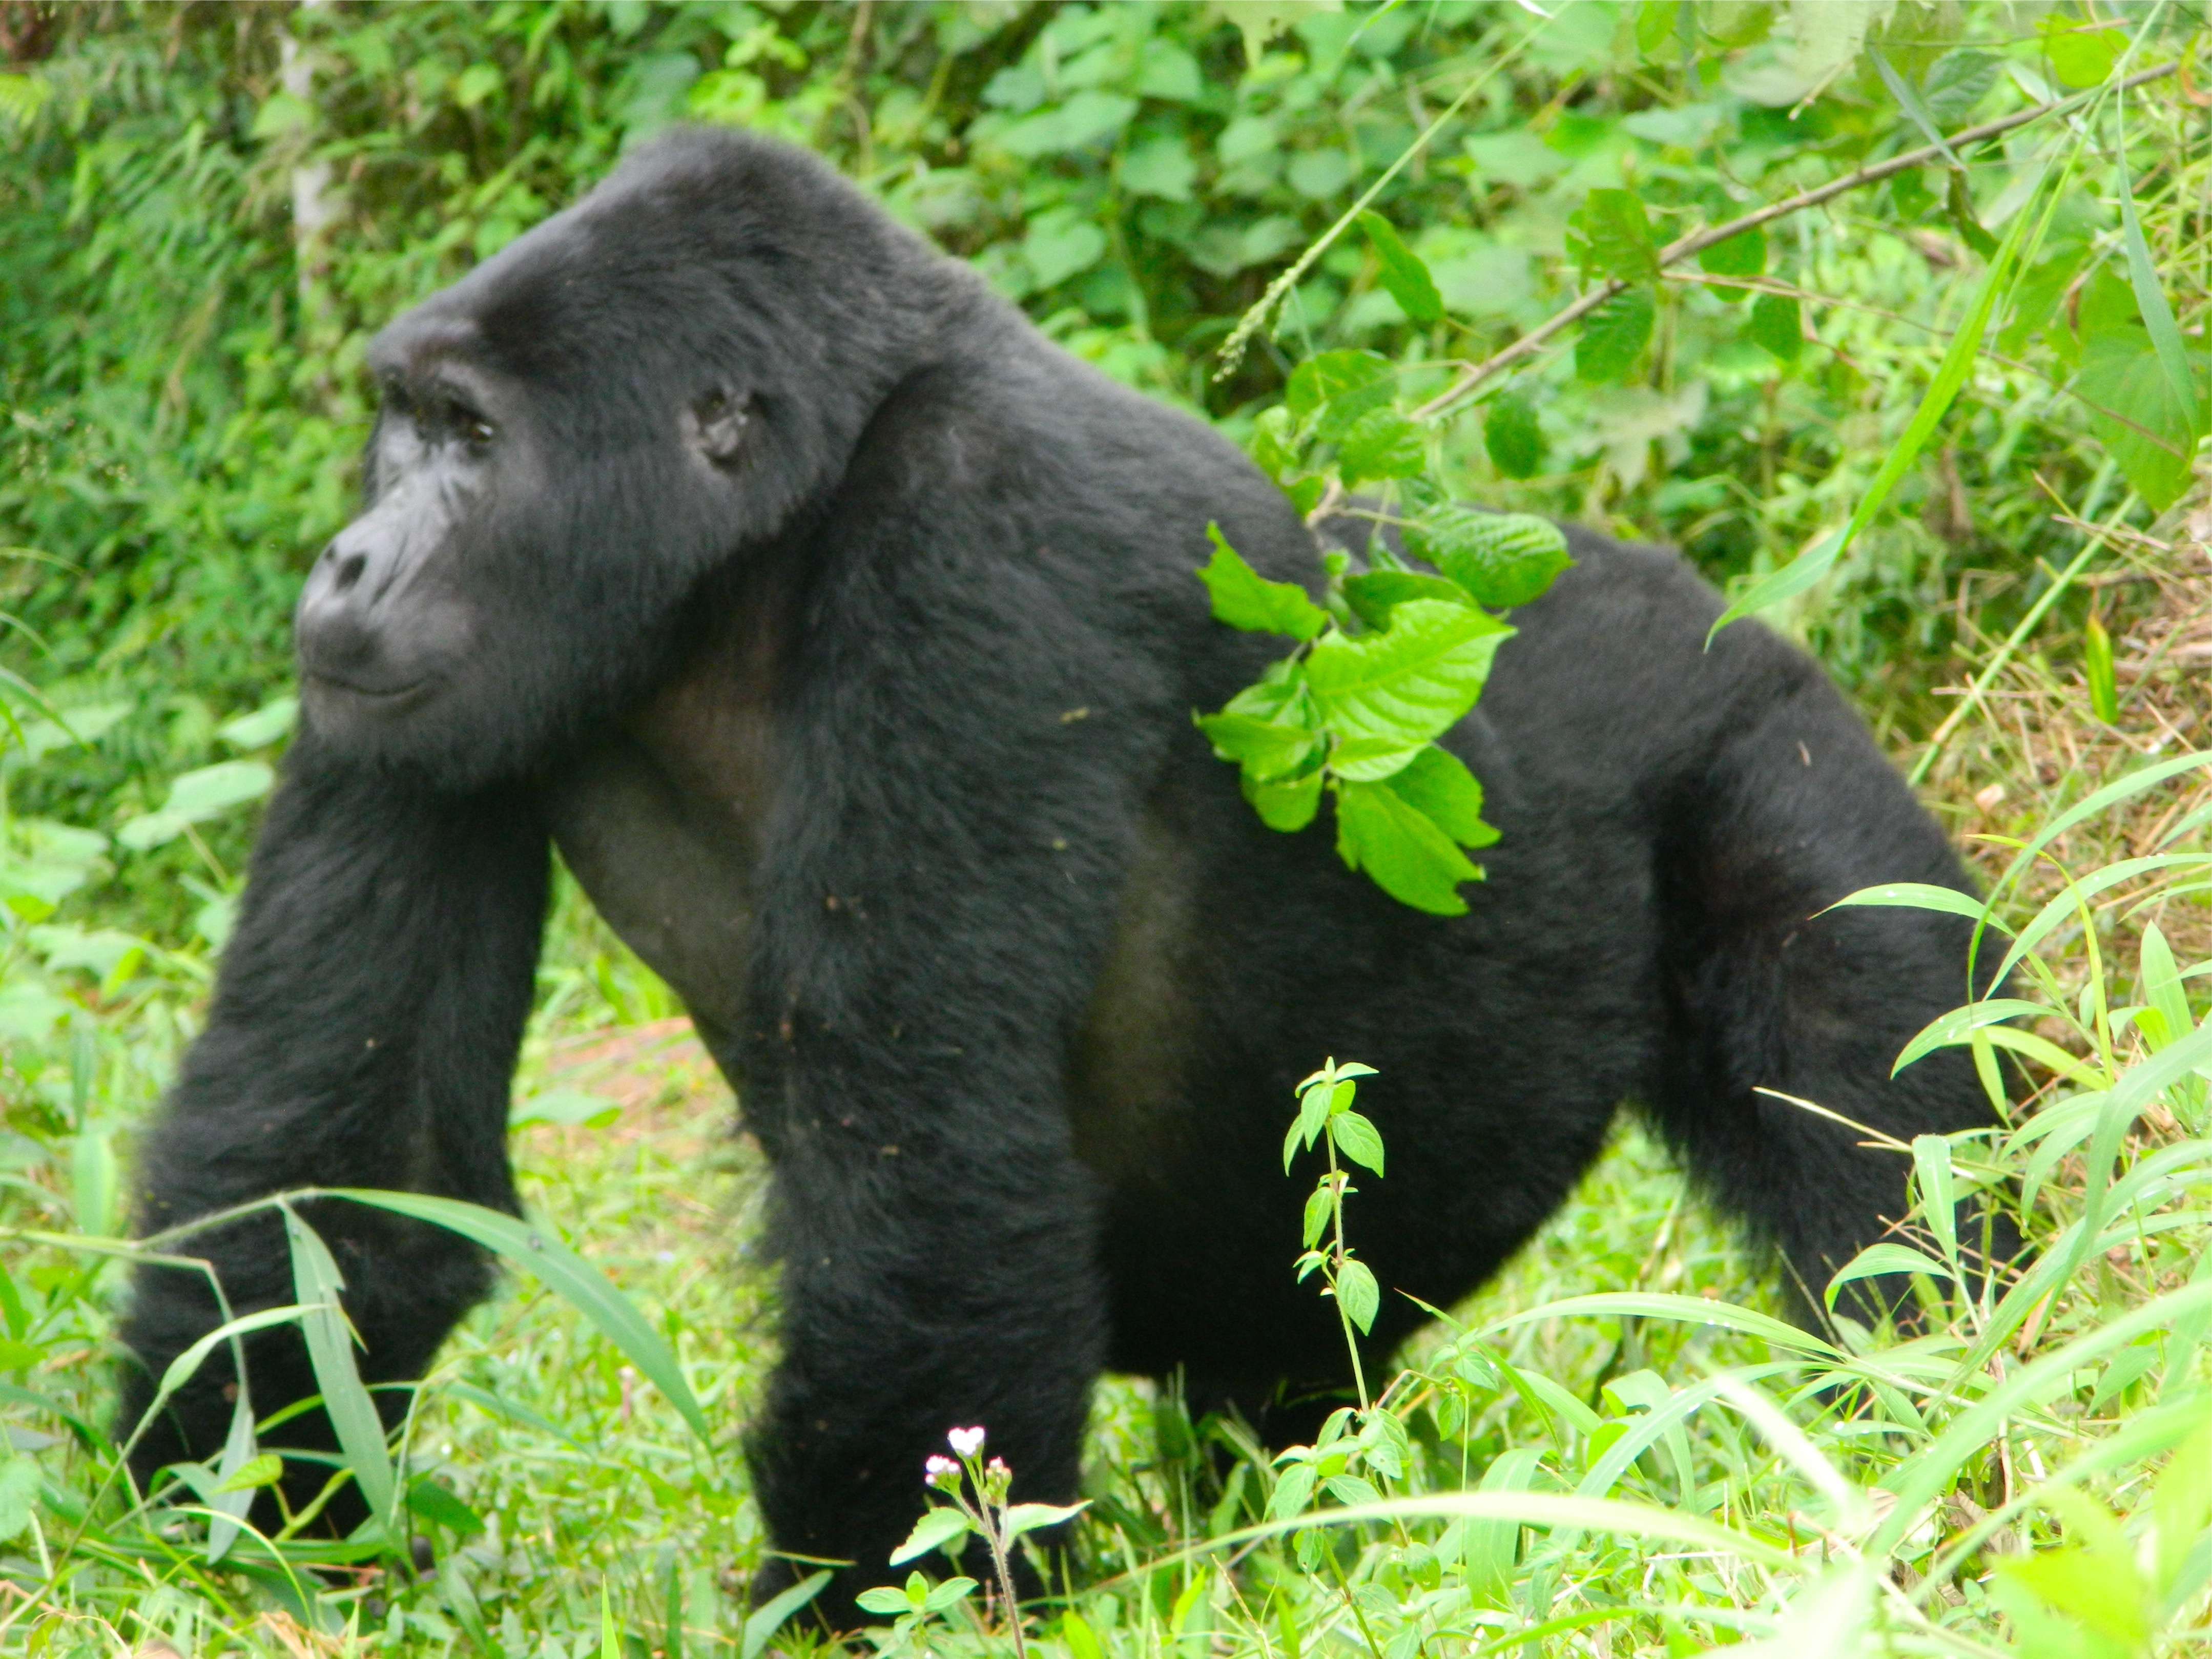 Gorilla trek tour prices and costing comparison